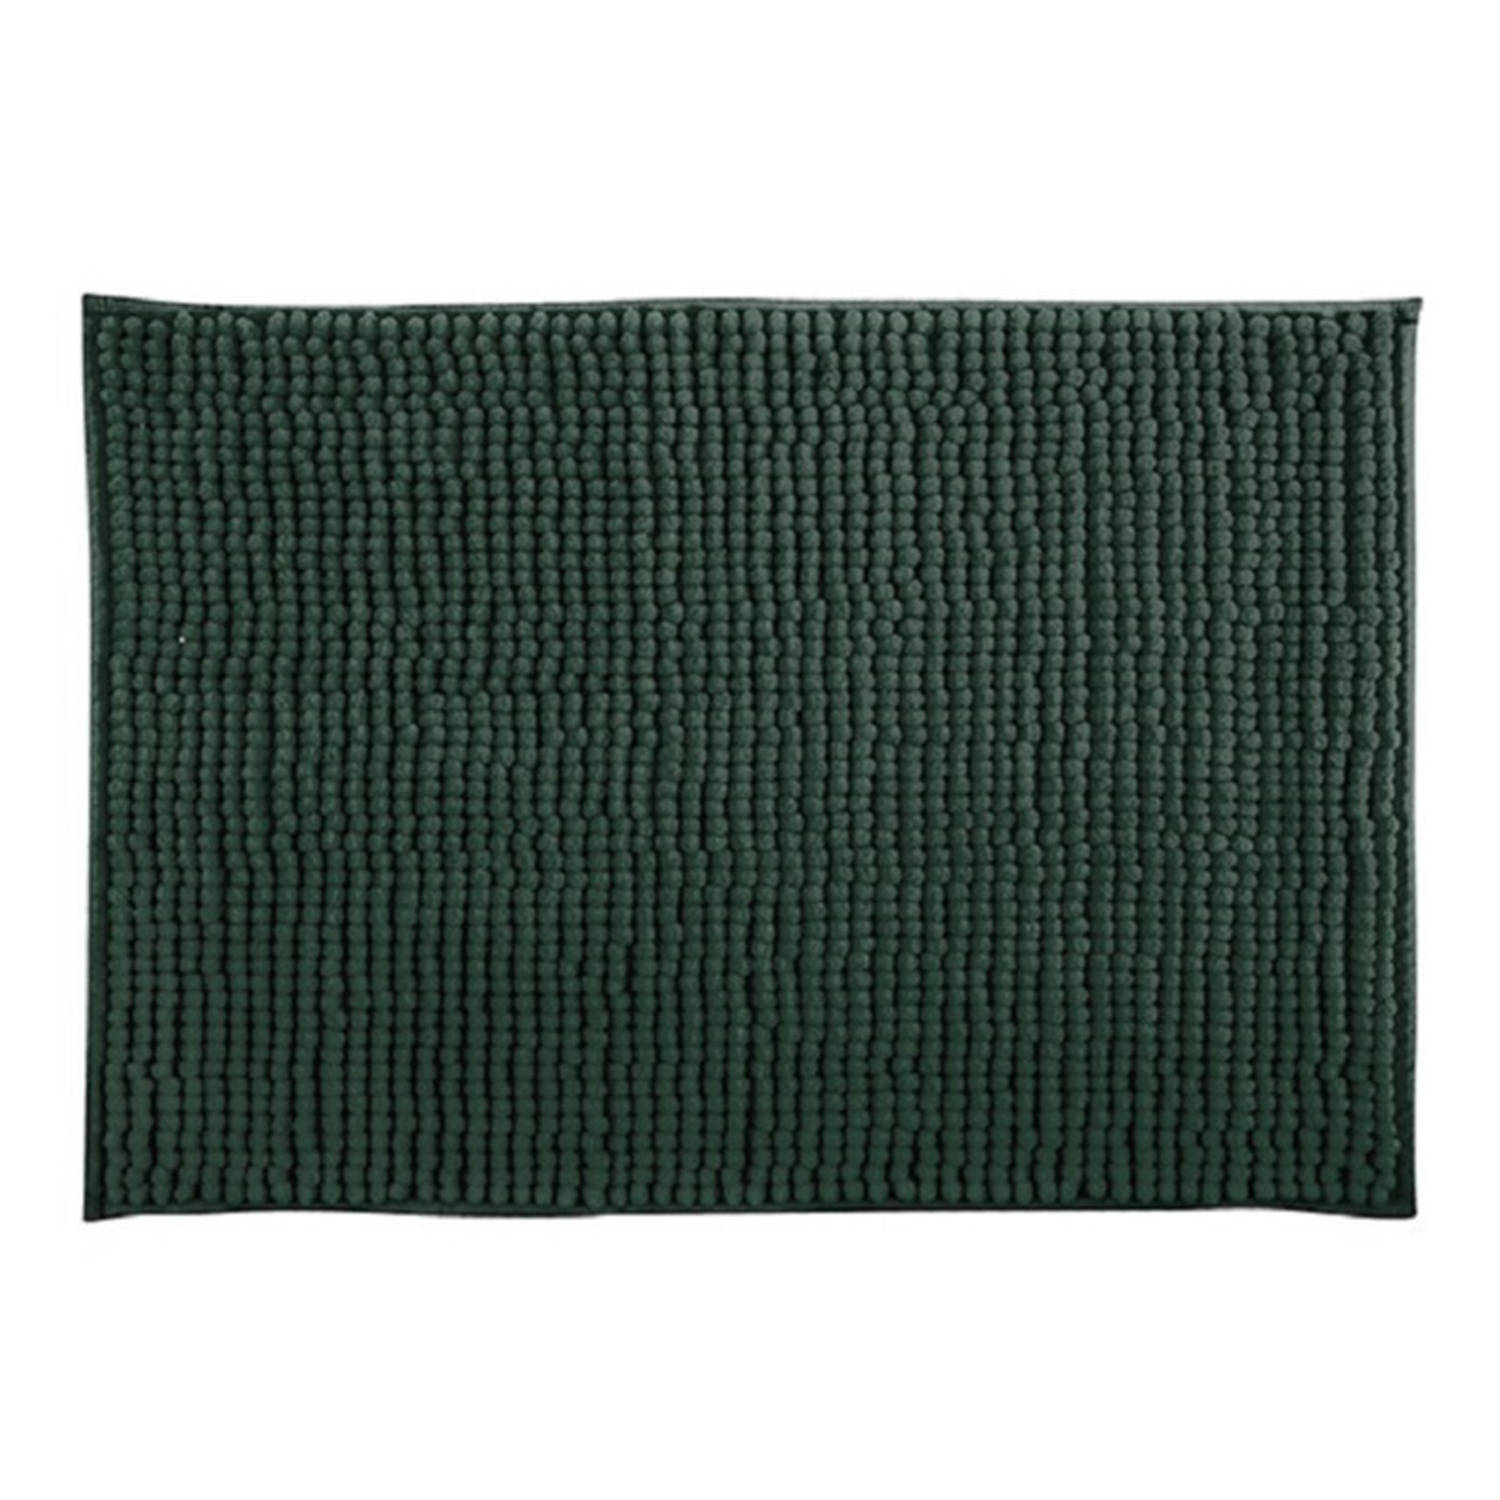 MSV Badkamerkleed-badmat tapijtje voor op de vloer donkergroen 50 x 80 cm Microvezel Badmatjes